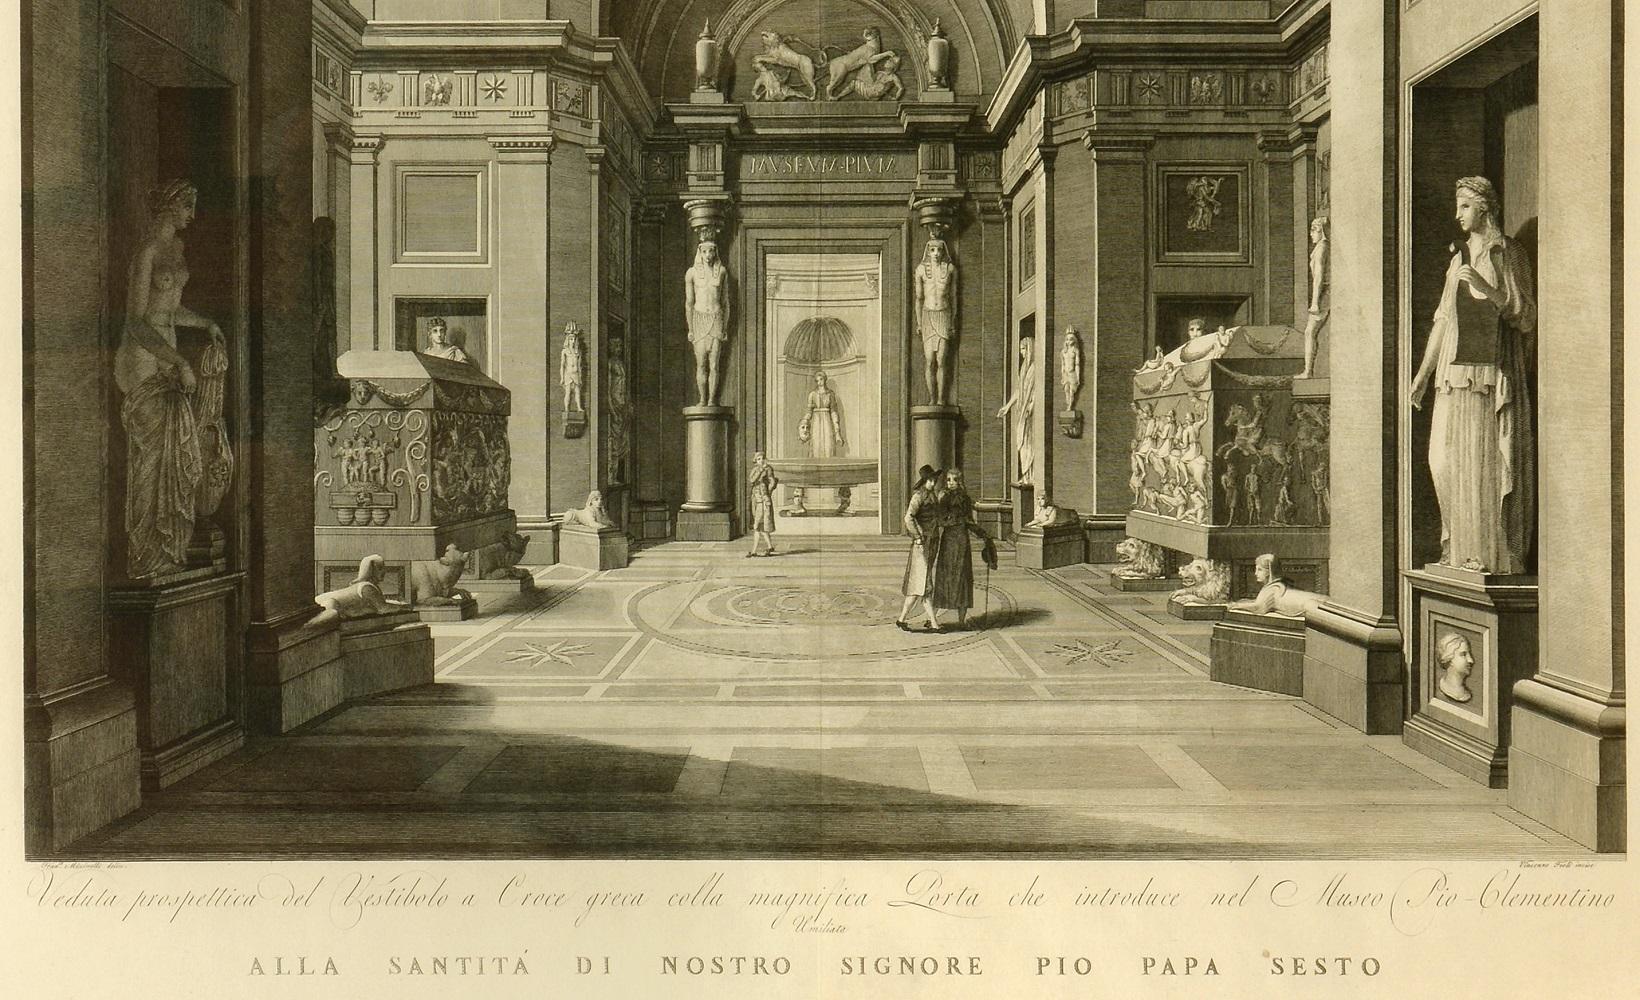 Prächtige große Tafel mit der Darstellung des Vatikanischen Museums am Ende des achtzehnten Jahrhunderts von Vincenzo Feoli (1750 - 1831) nach Micenelli und Costa.

Das Museum Pio-Clementino, benannt nach den beiden Päpsten, die seine Gründung